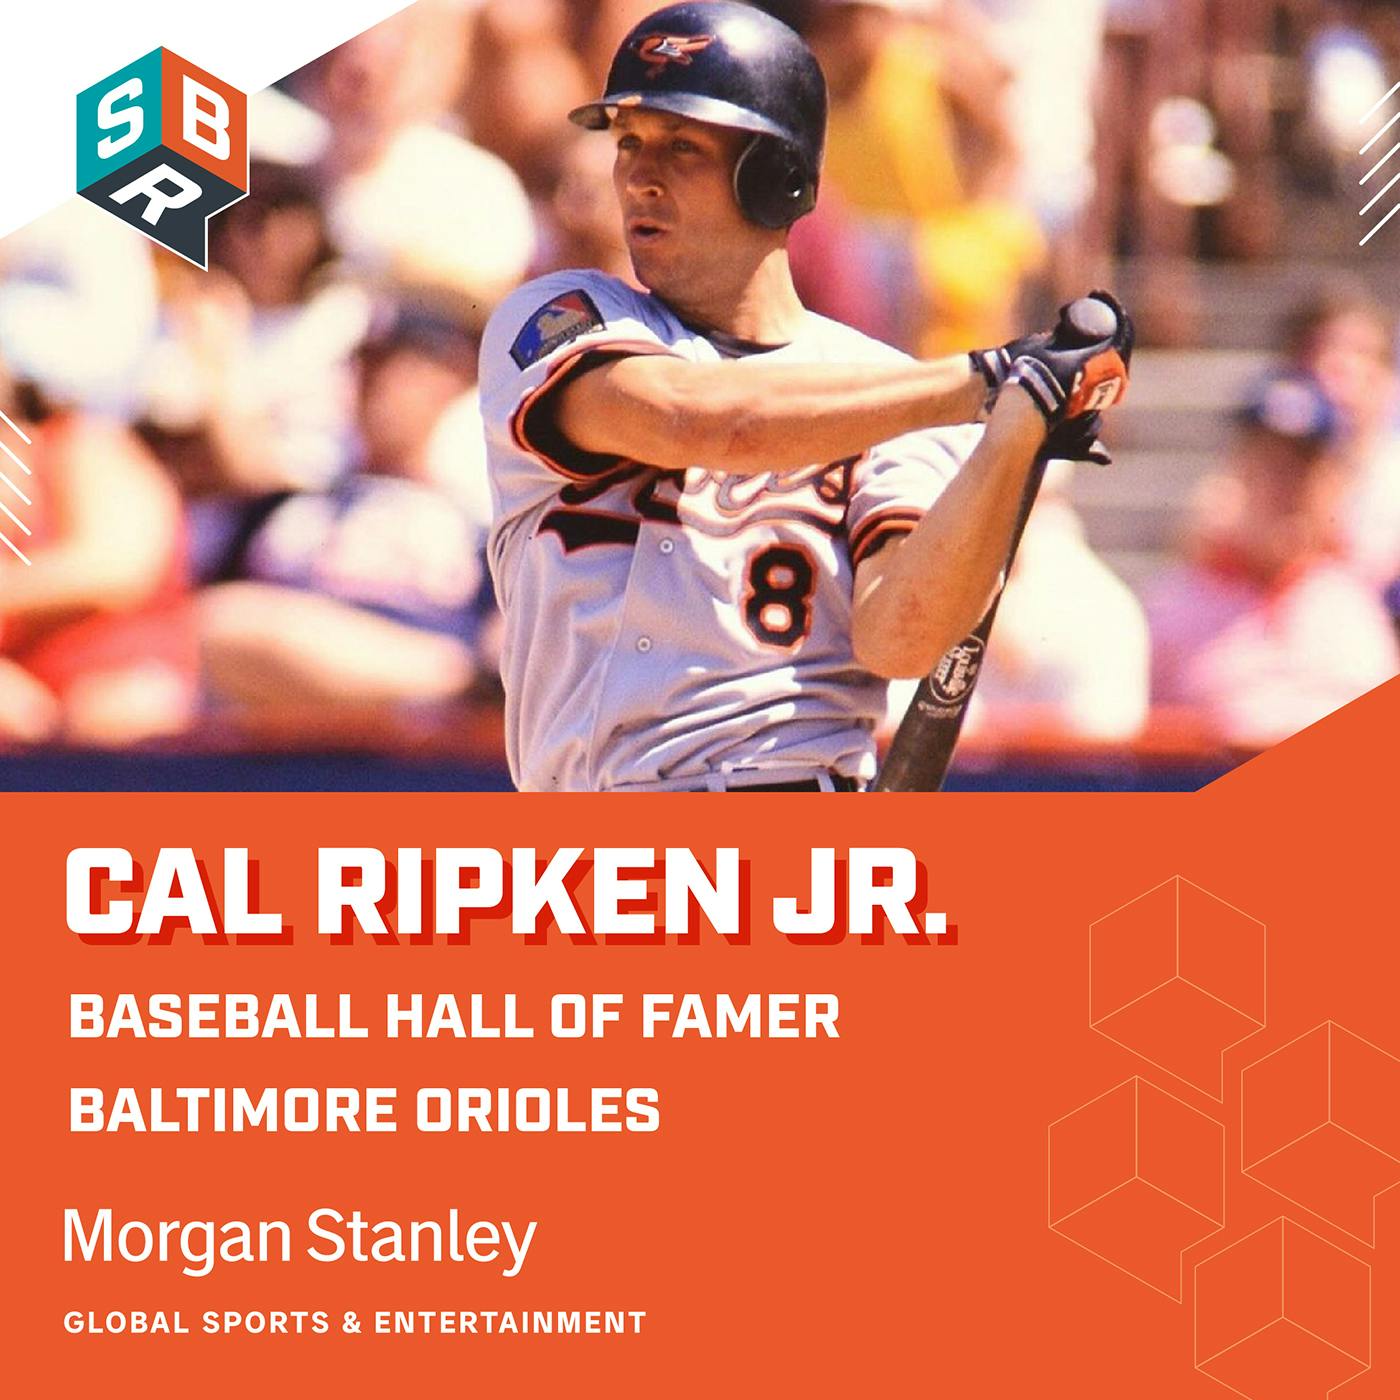 Cal Ripken Jr. - Baseball Hall of Famer, Baltimore Orioles Co-Owner